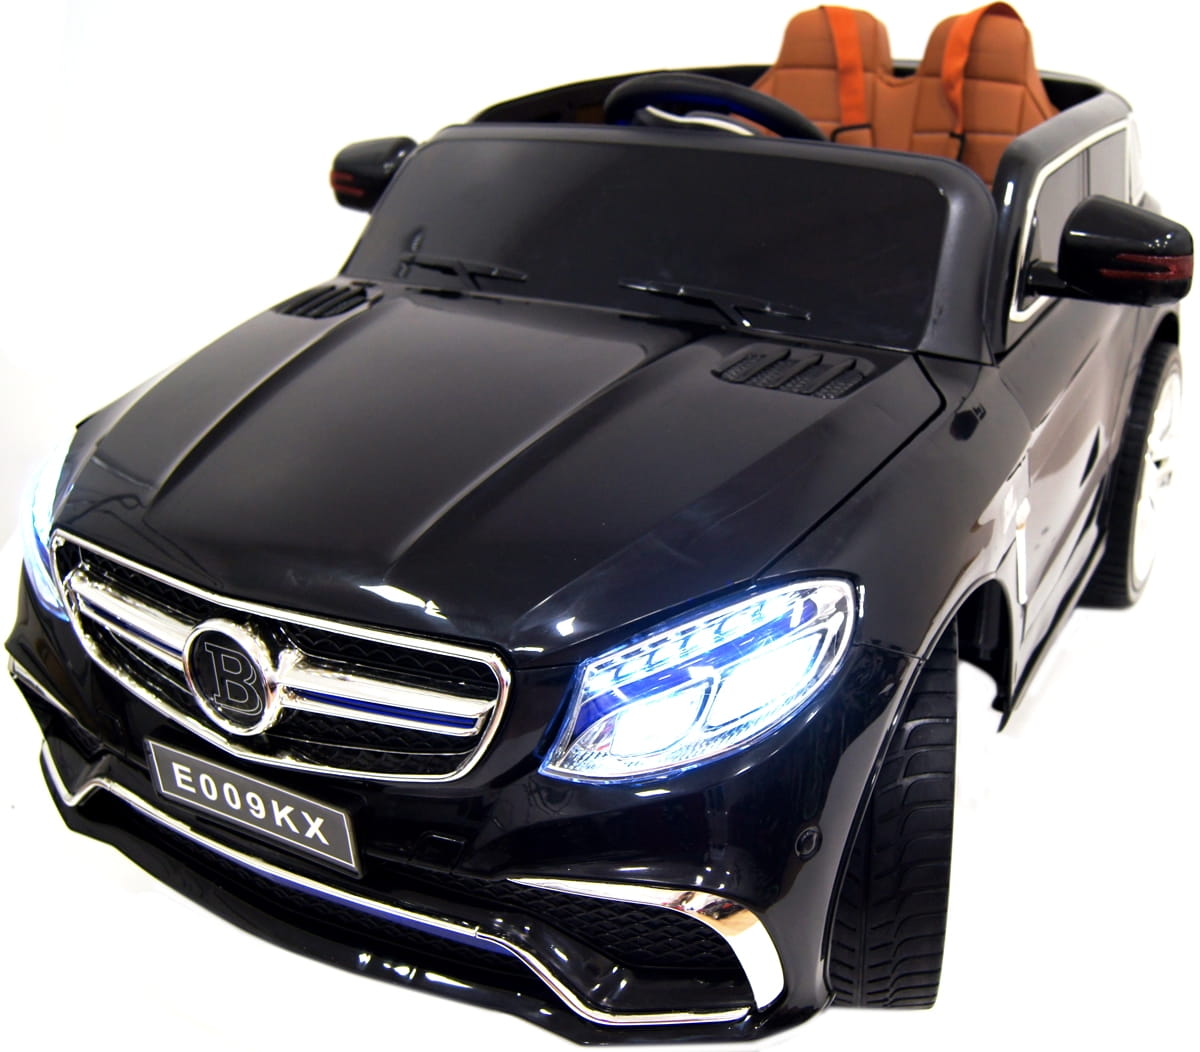 Электромобиль River Toys Mercedes E009KX (с дистанционным управлением) - черный